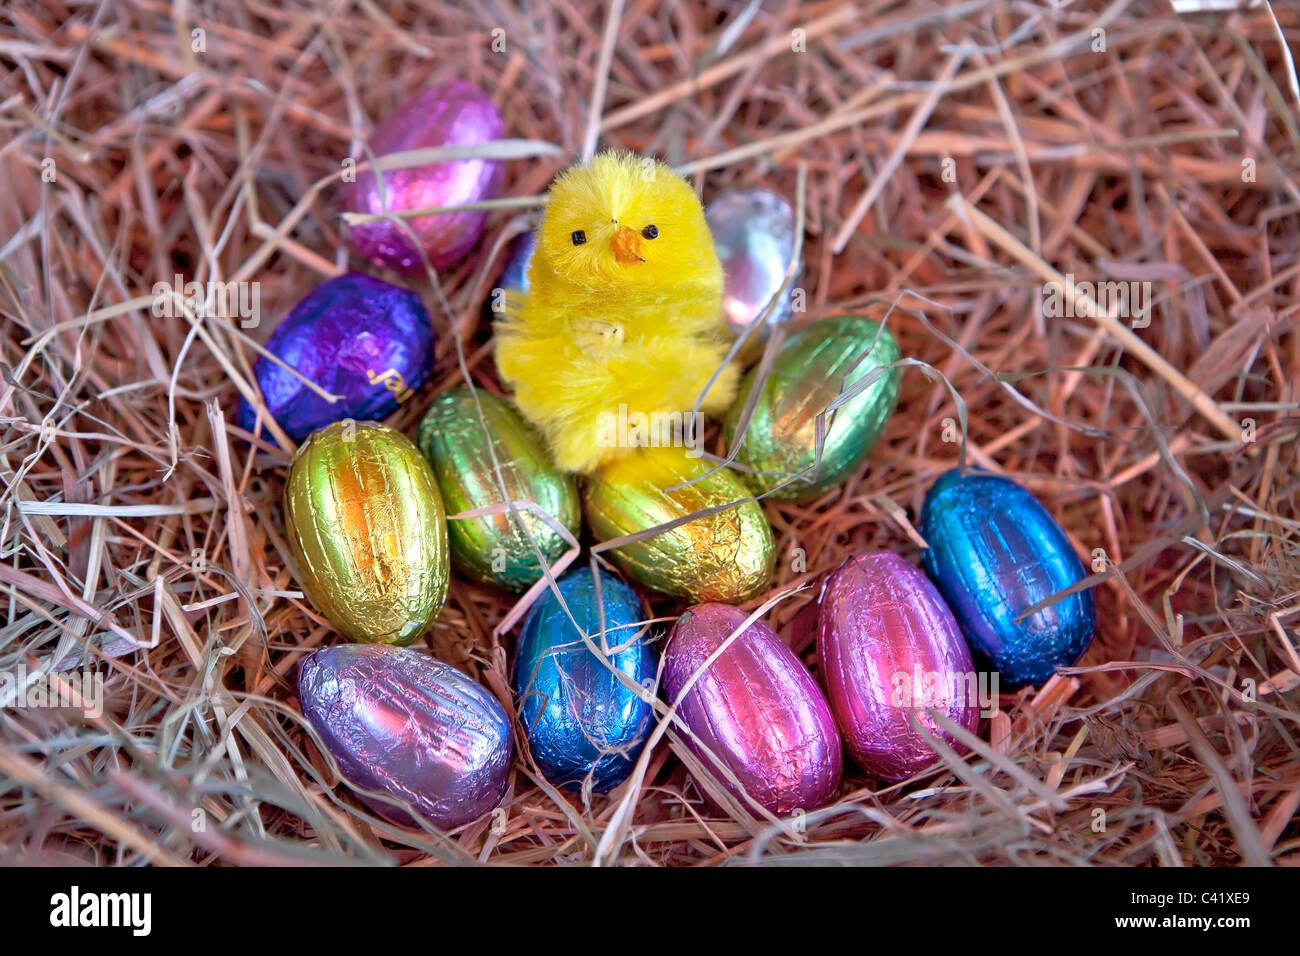 Œuf de Pâques avec un poussin dans un nid de paille Banque D'Images